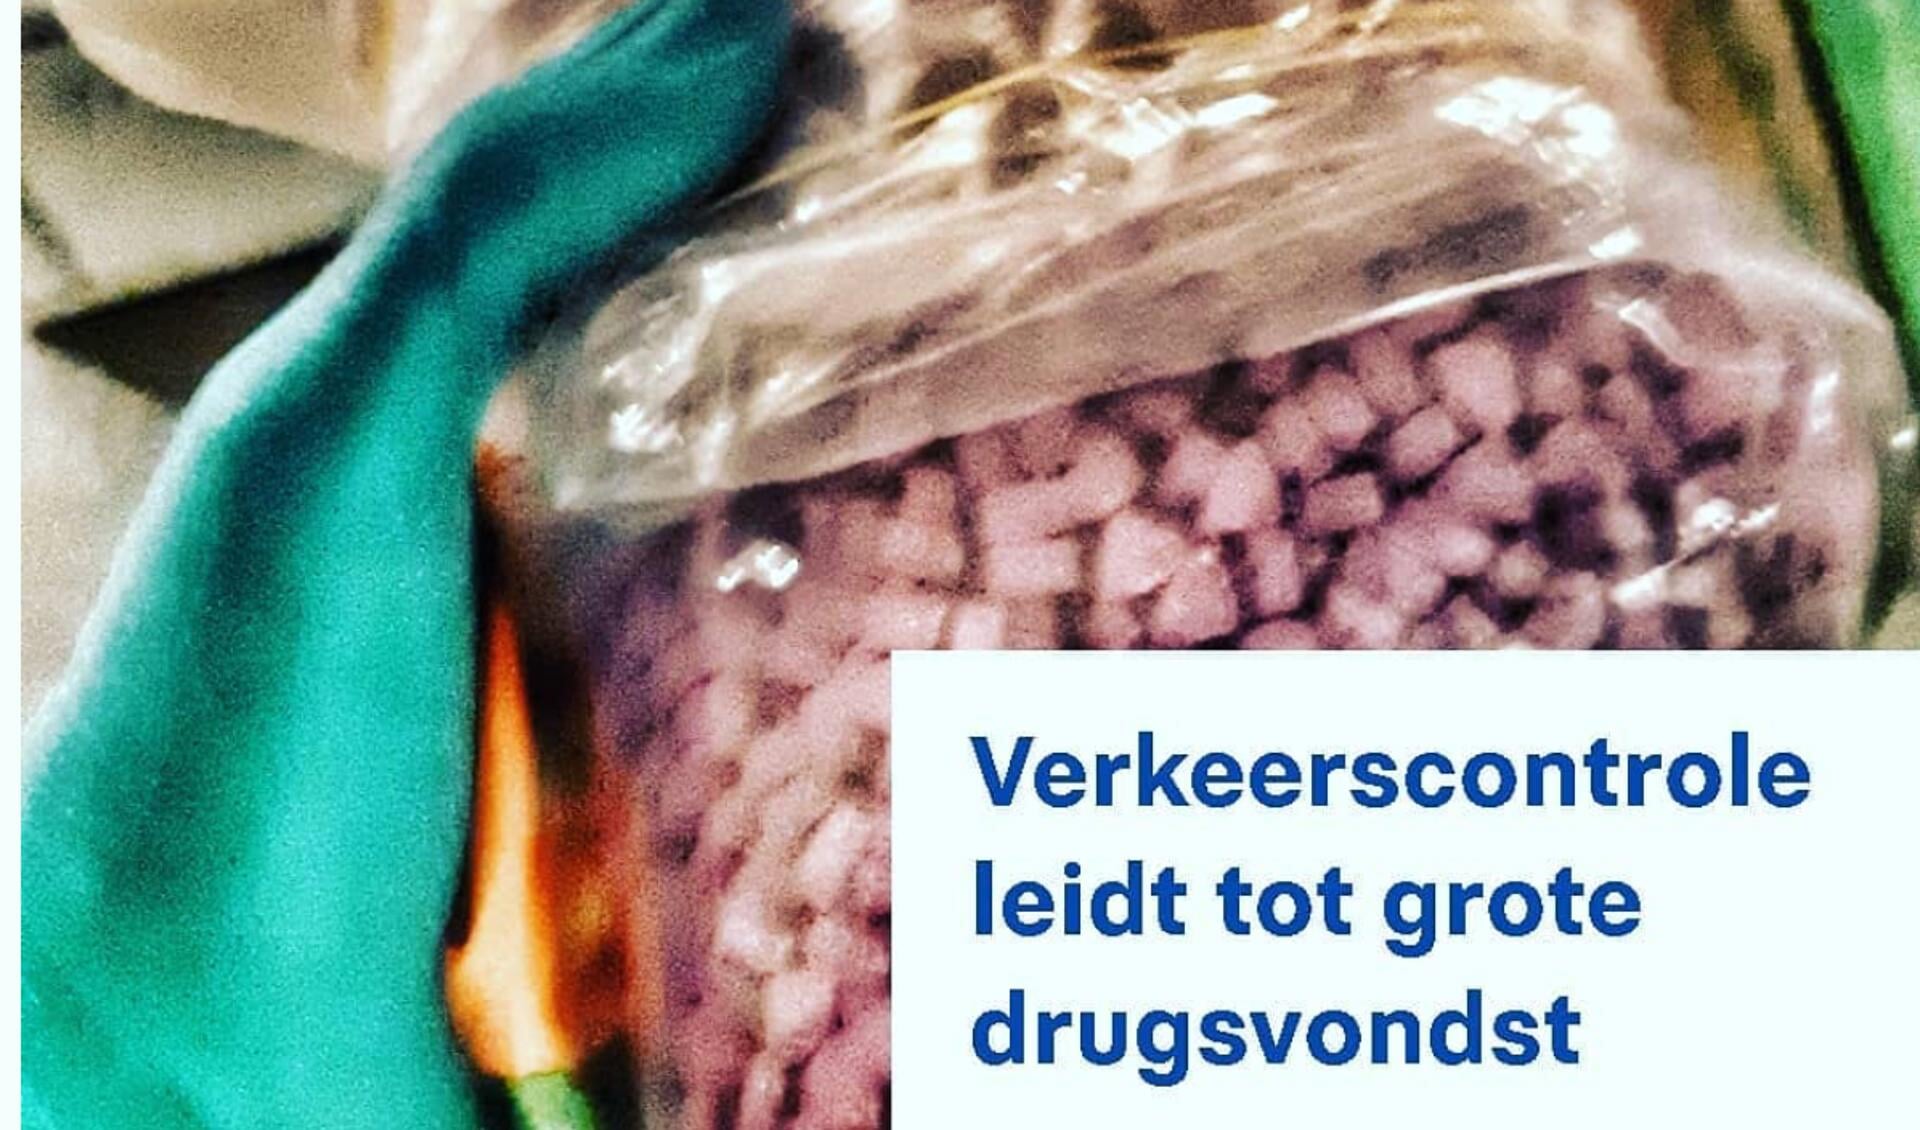 Foto van Politie Sneek, met daarop een plastic zak vol xtc-pillen. De totale straatwaarde van de drugs wordt geschat op 55.000 euro.